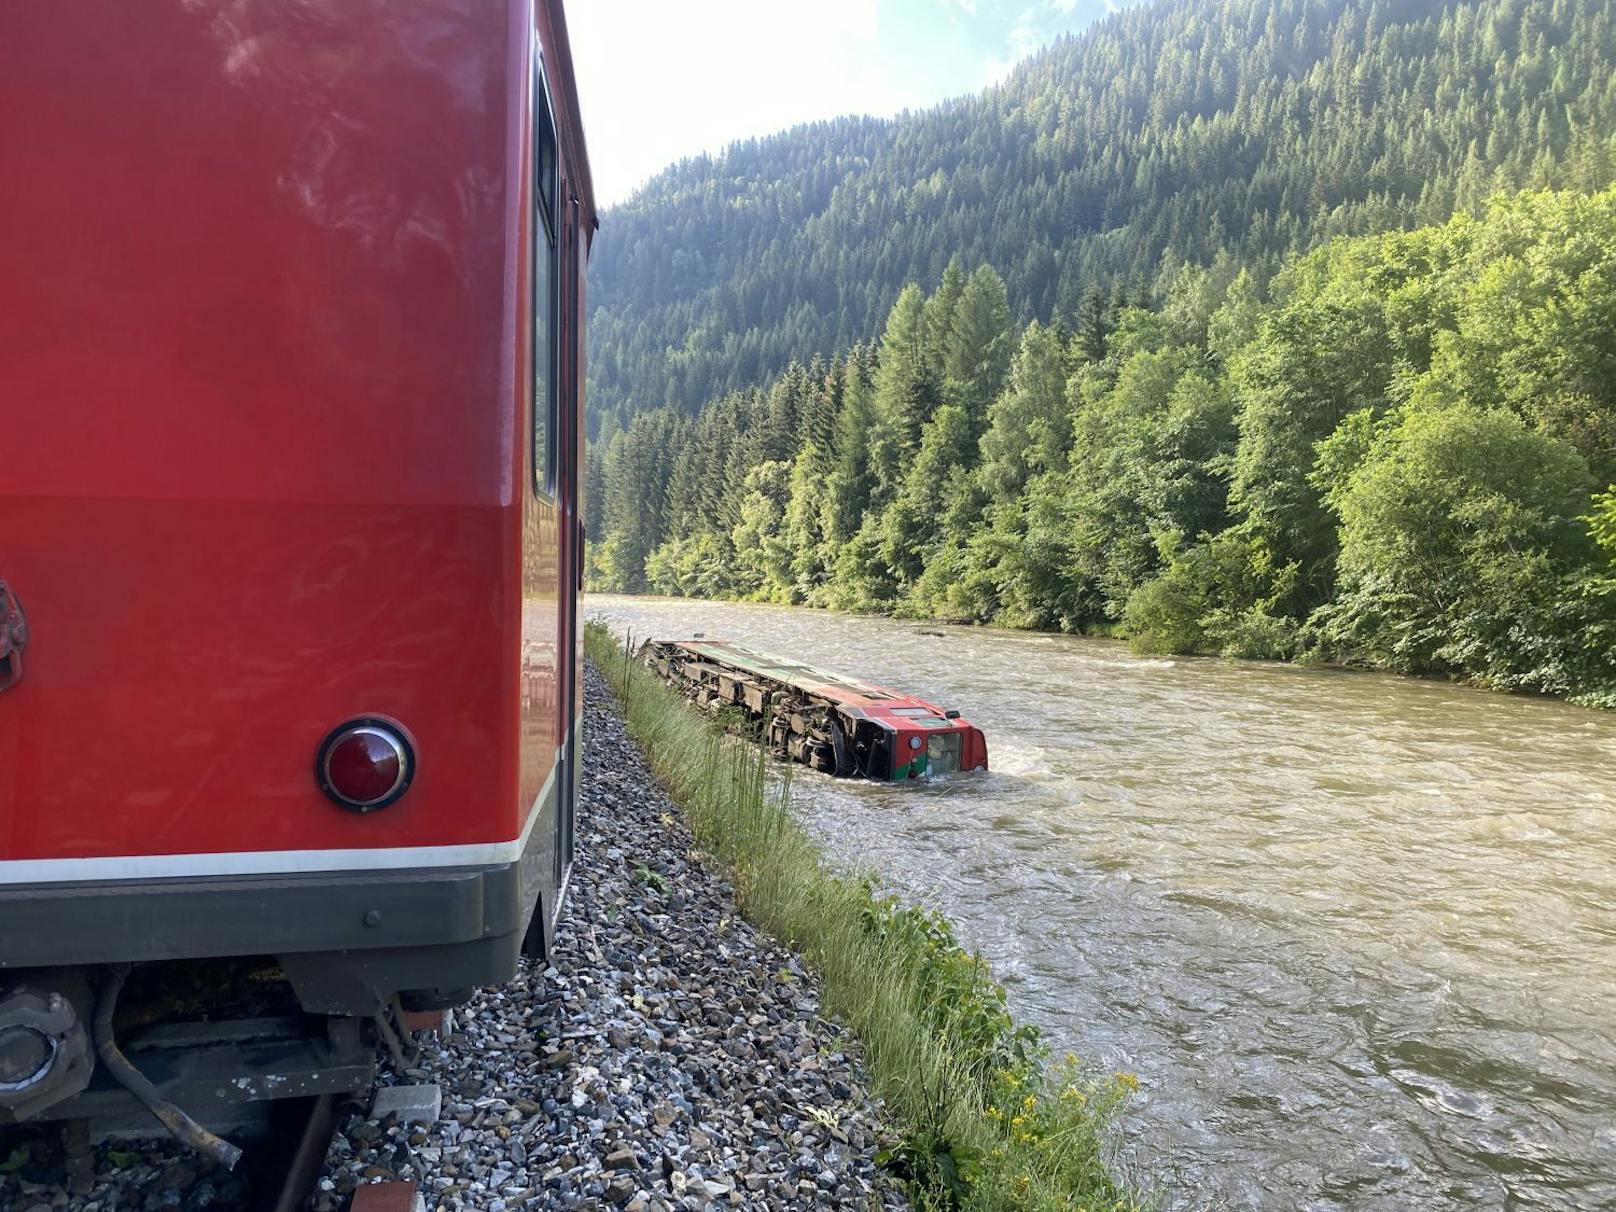 54 Passagiere haben sich zum Zeitpunkt des Unglücks um kurz nach 7 Uhr im Zug befunden, darunter mindestens 45 Kinder. Der Unfall ereignete sich Freitagfrüh im Salzburger Lungau.